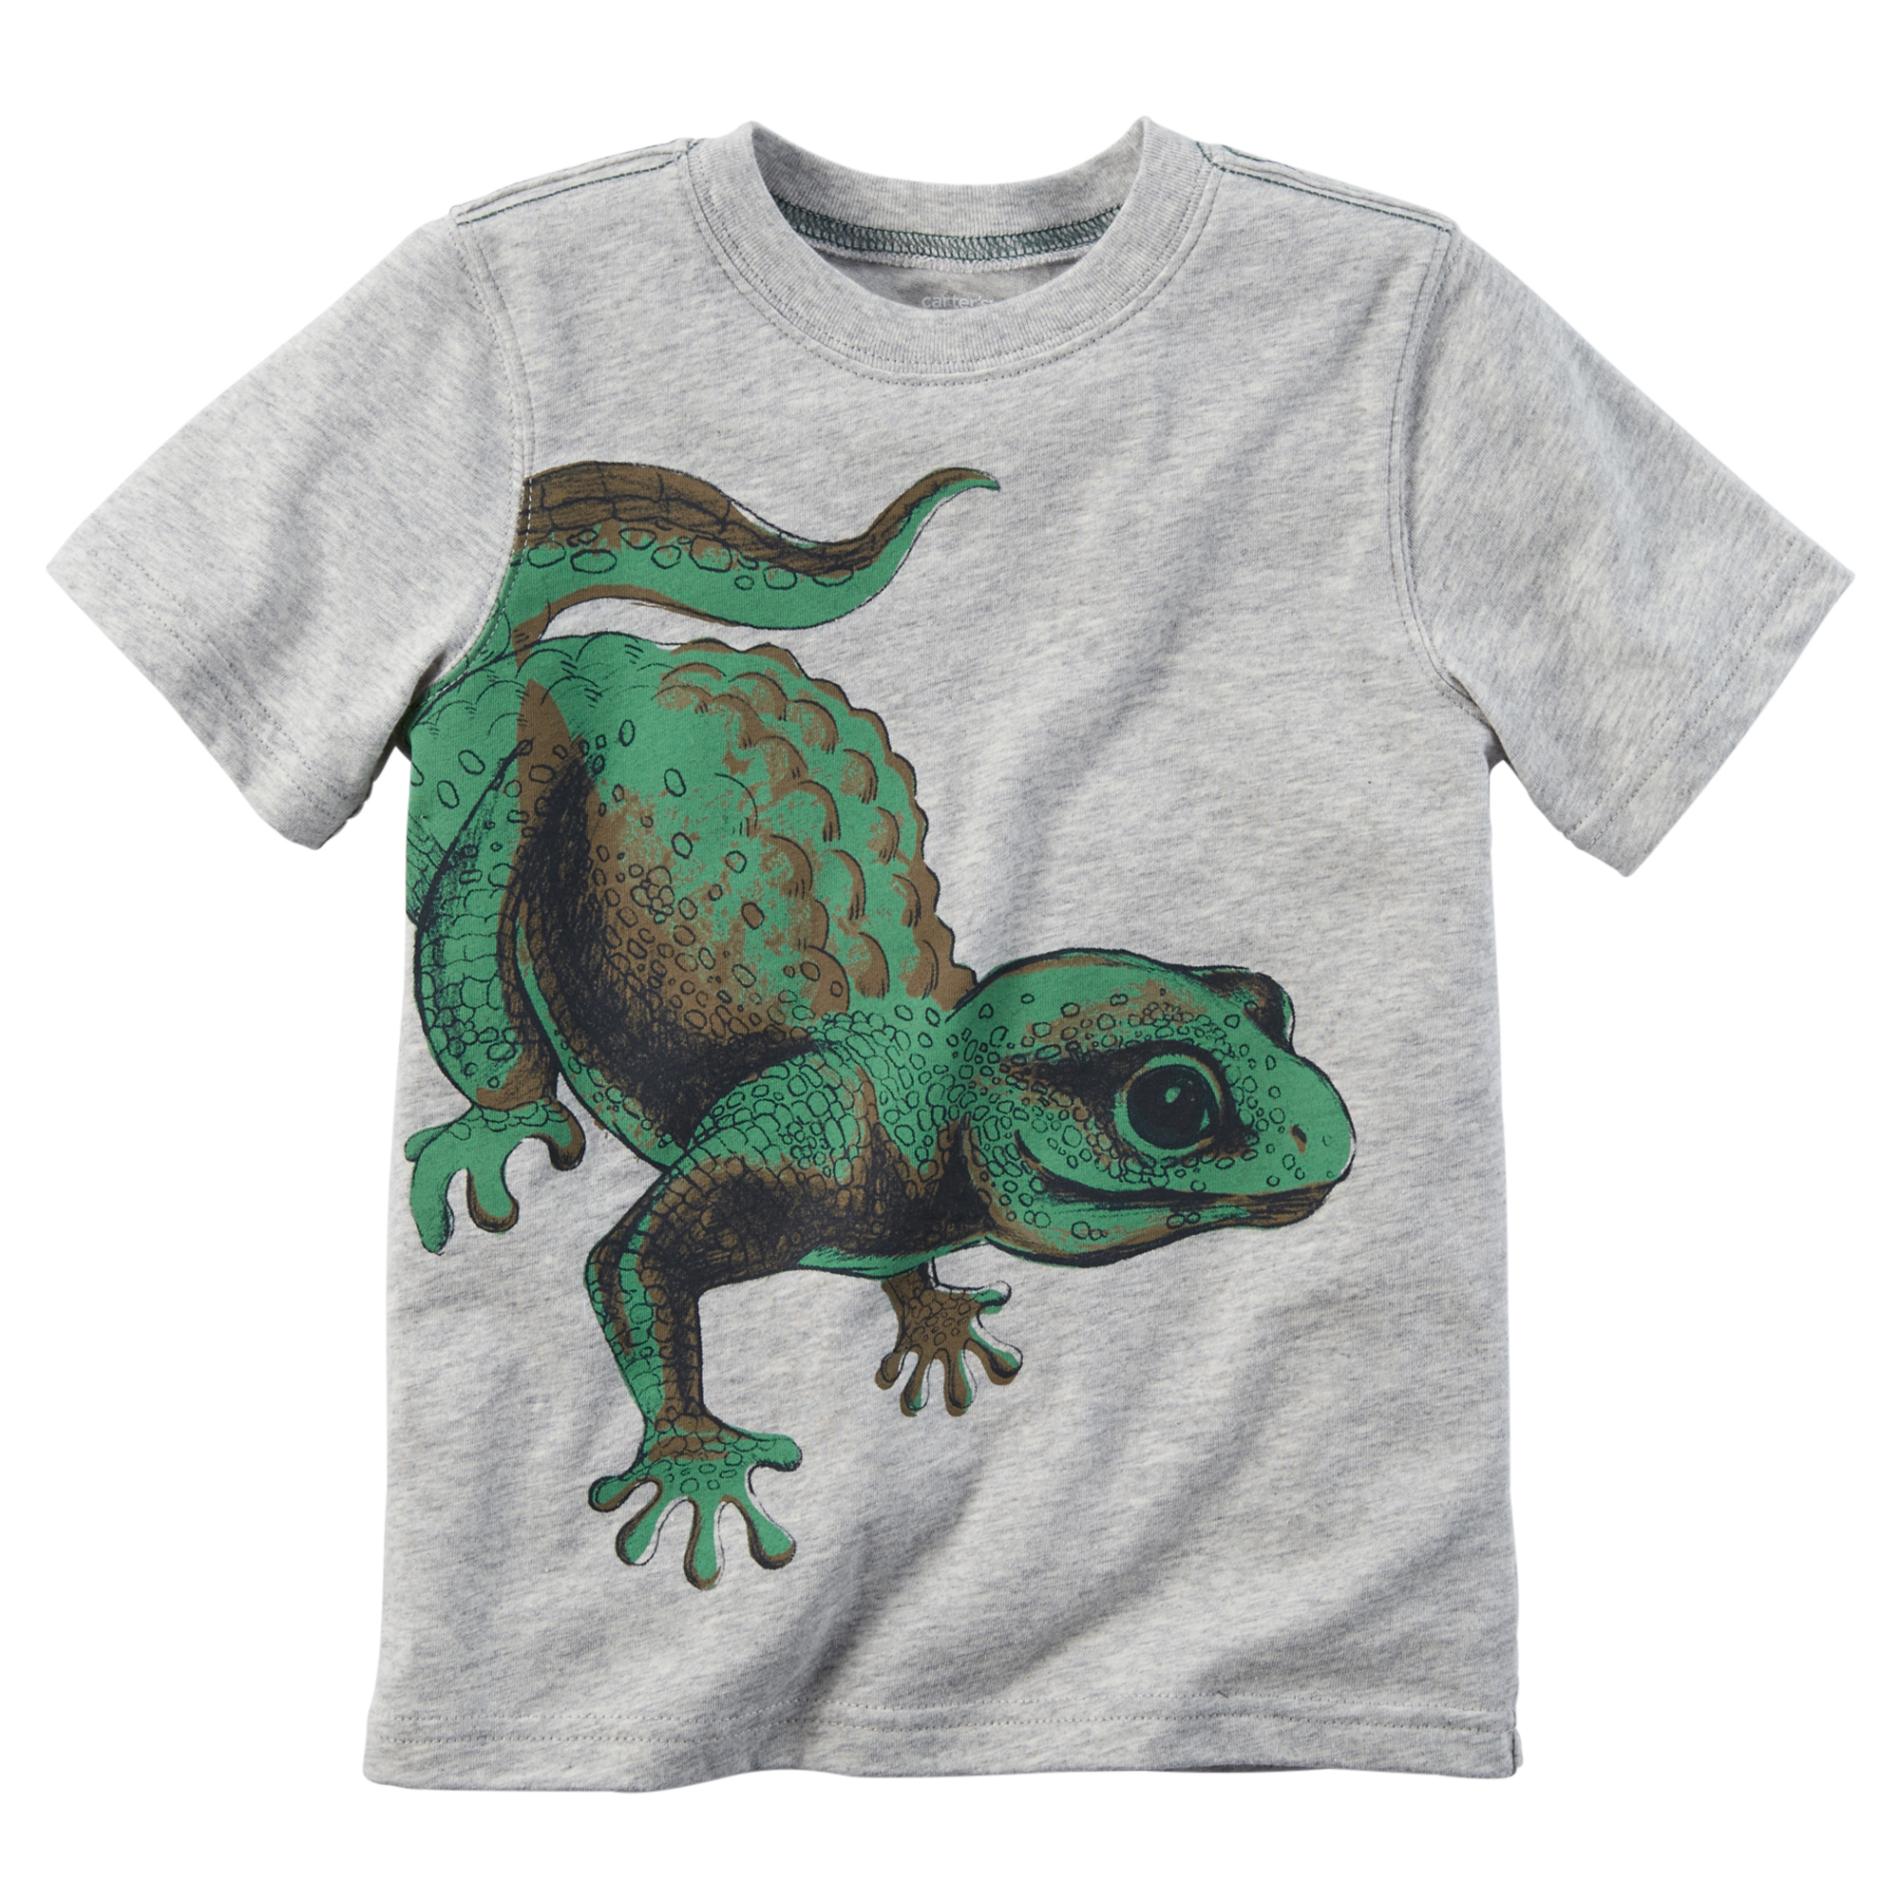 Carter's Toddler Boy's Graphic T-Shirt - Lizard